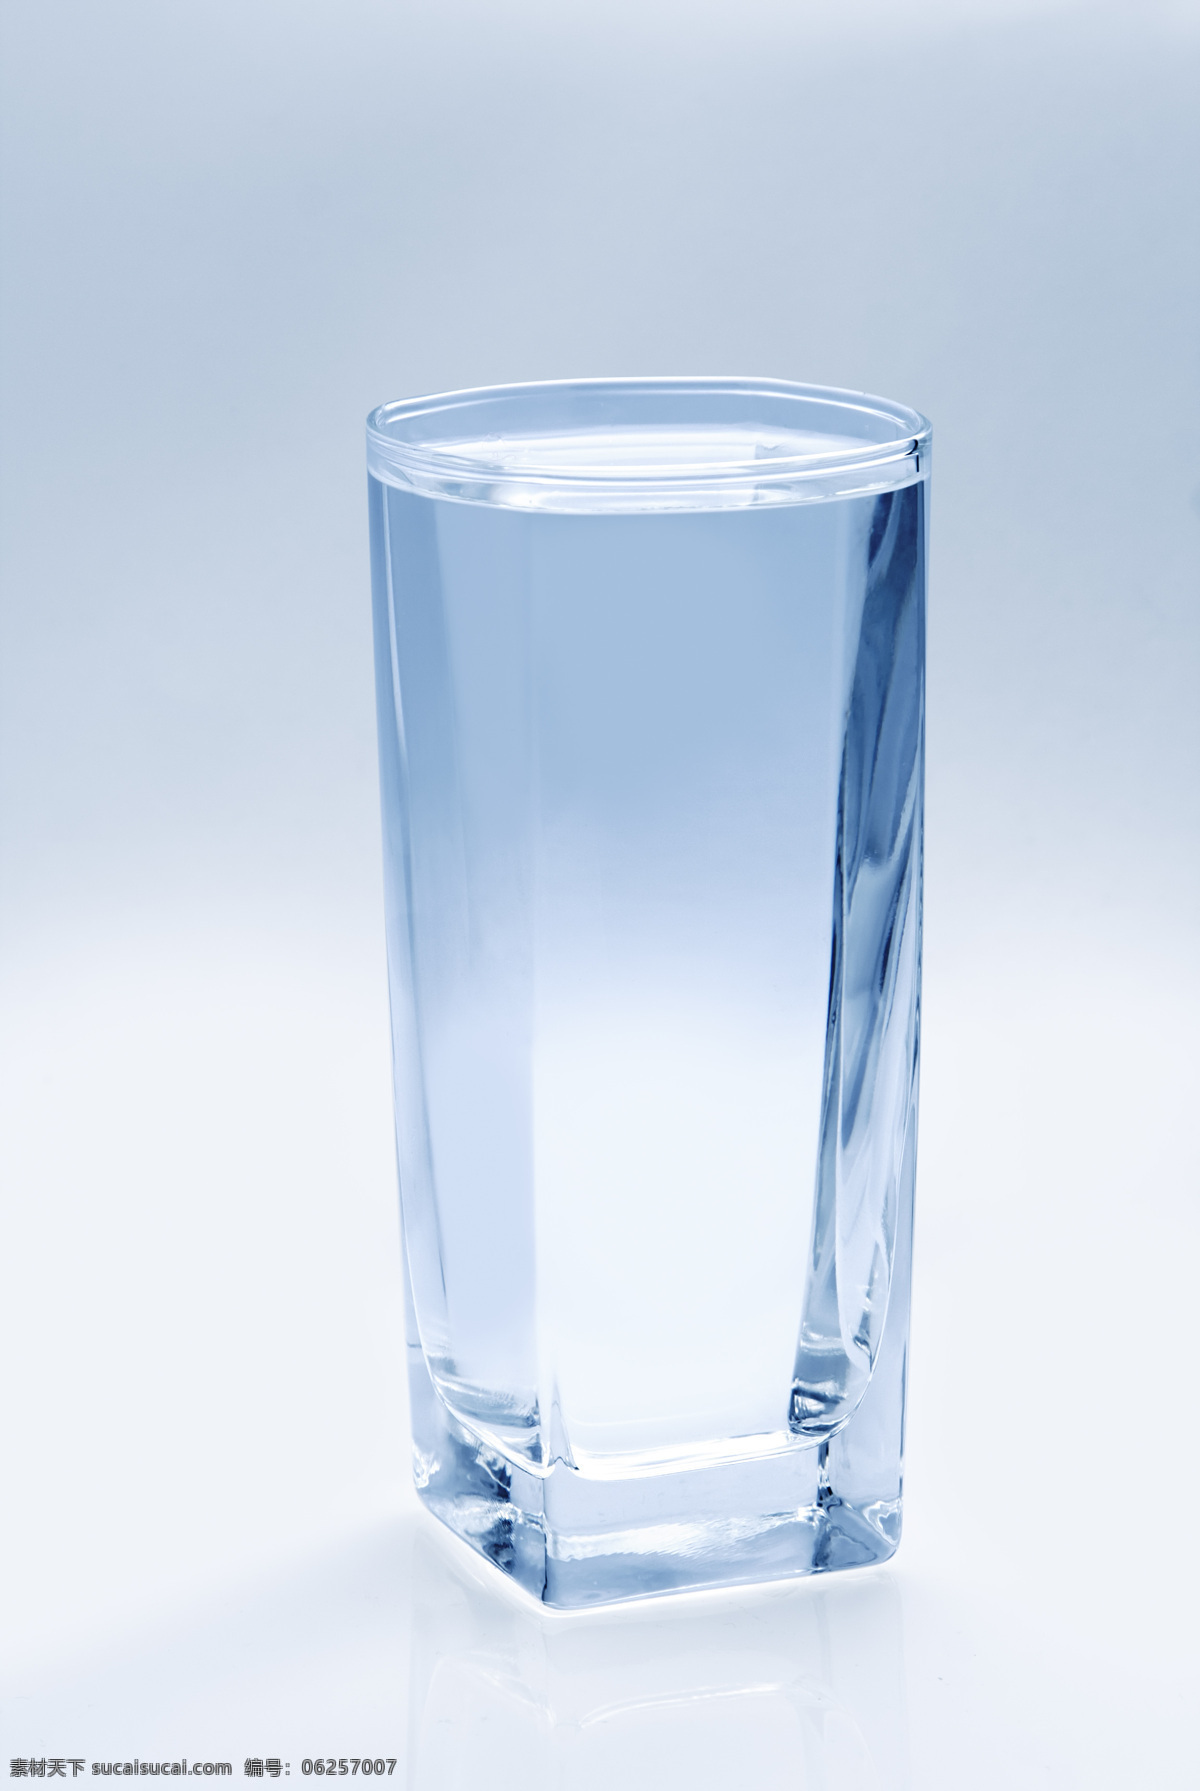 水杯 杯子 玻璃杯矿泉水 蒸馏 饮用水 瓶子 酒 饮料 饮料酒水 餐饮美食